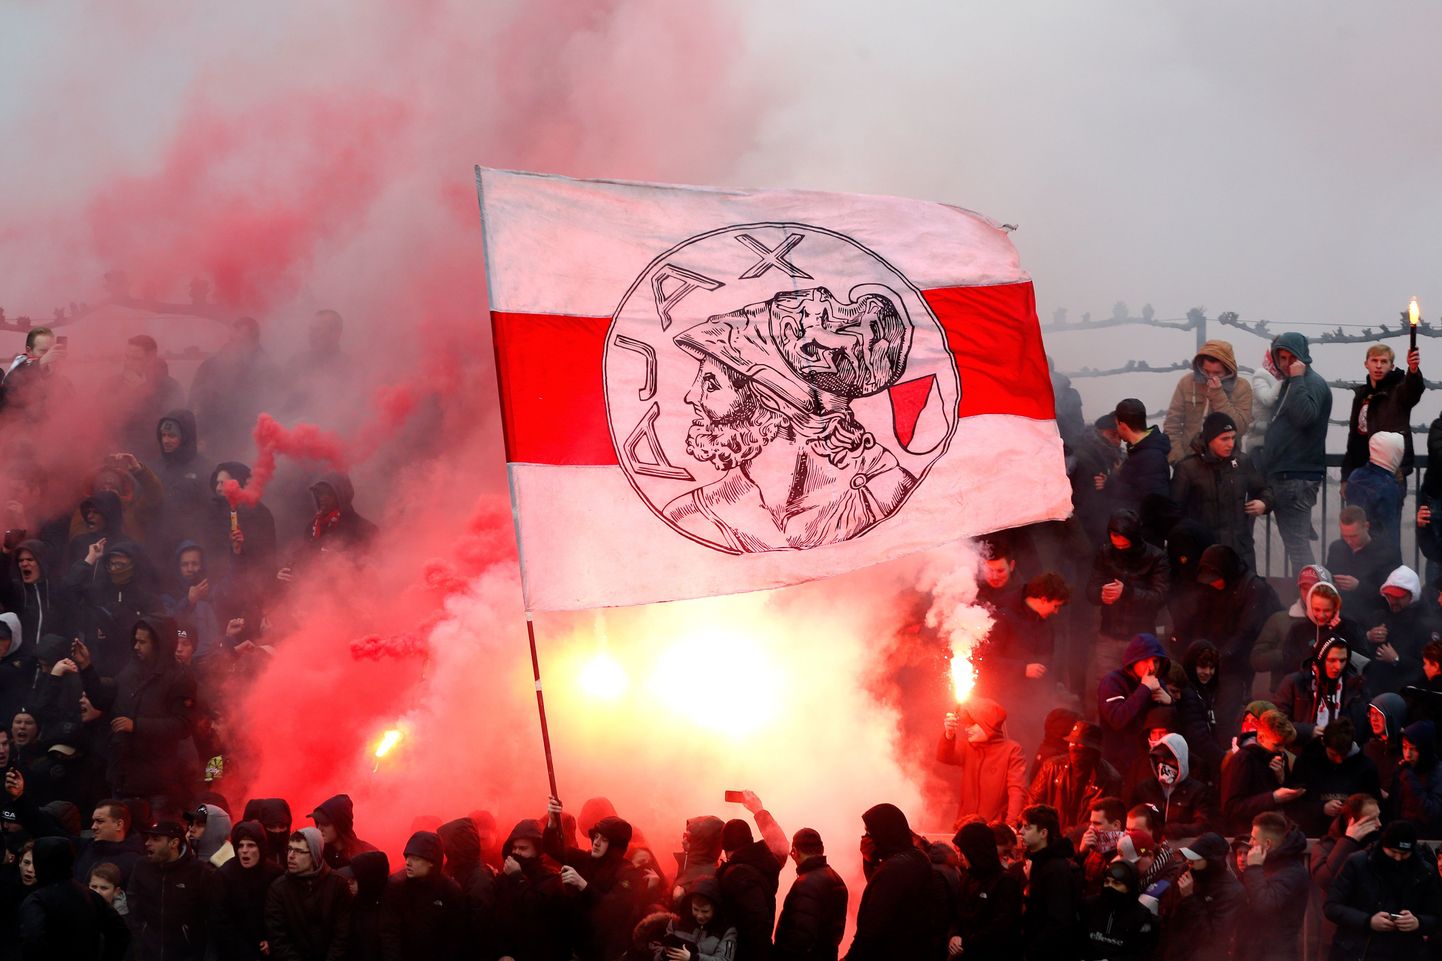 Amsterdami Ajaxi fännid ja lipp. Foto on illustratiivne.